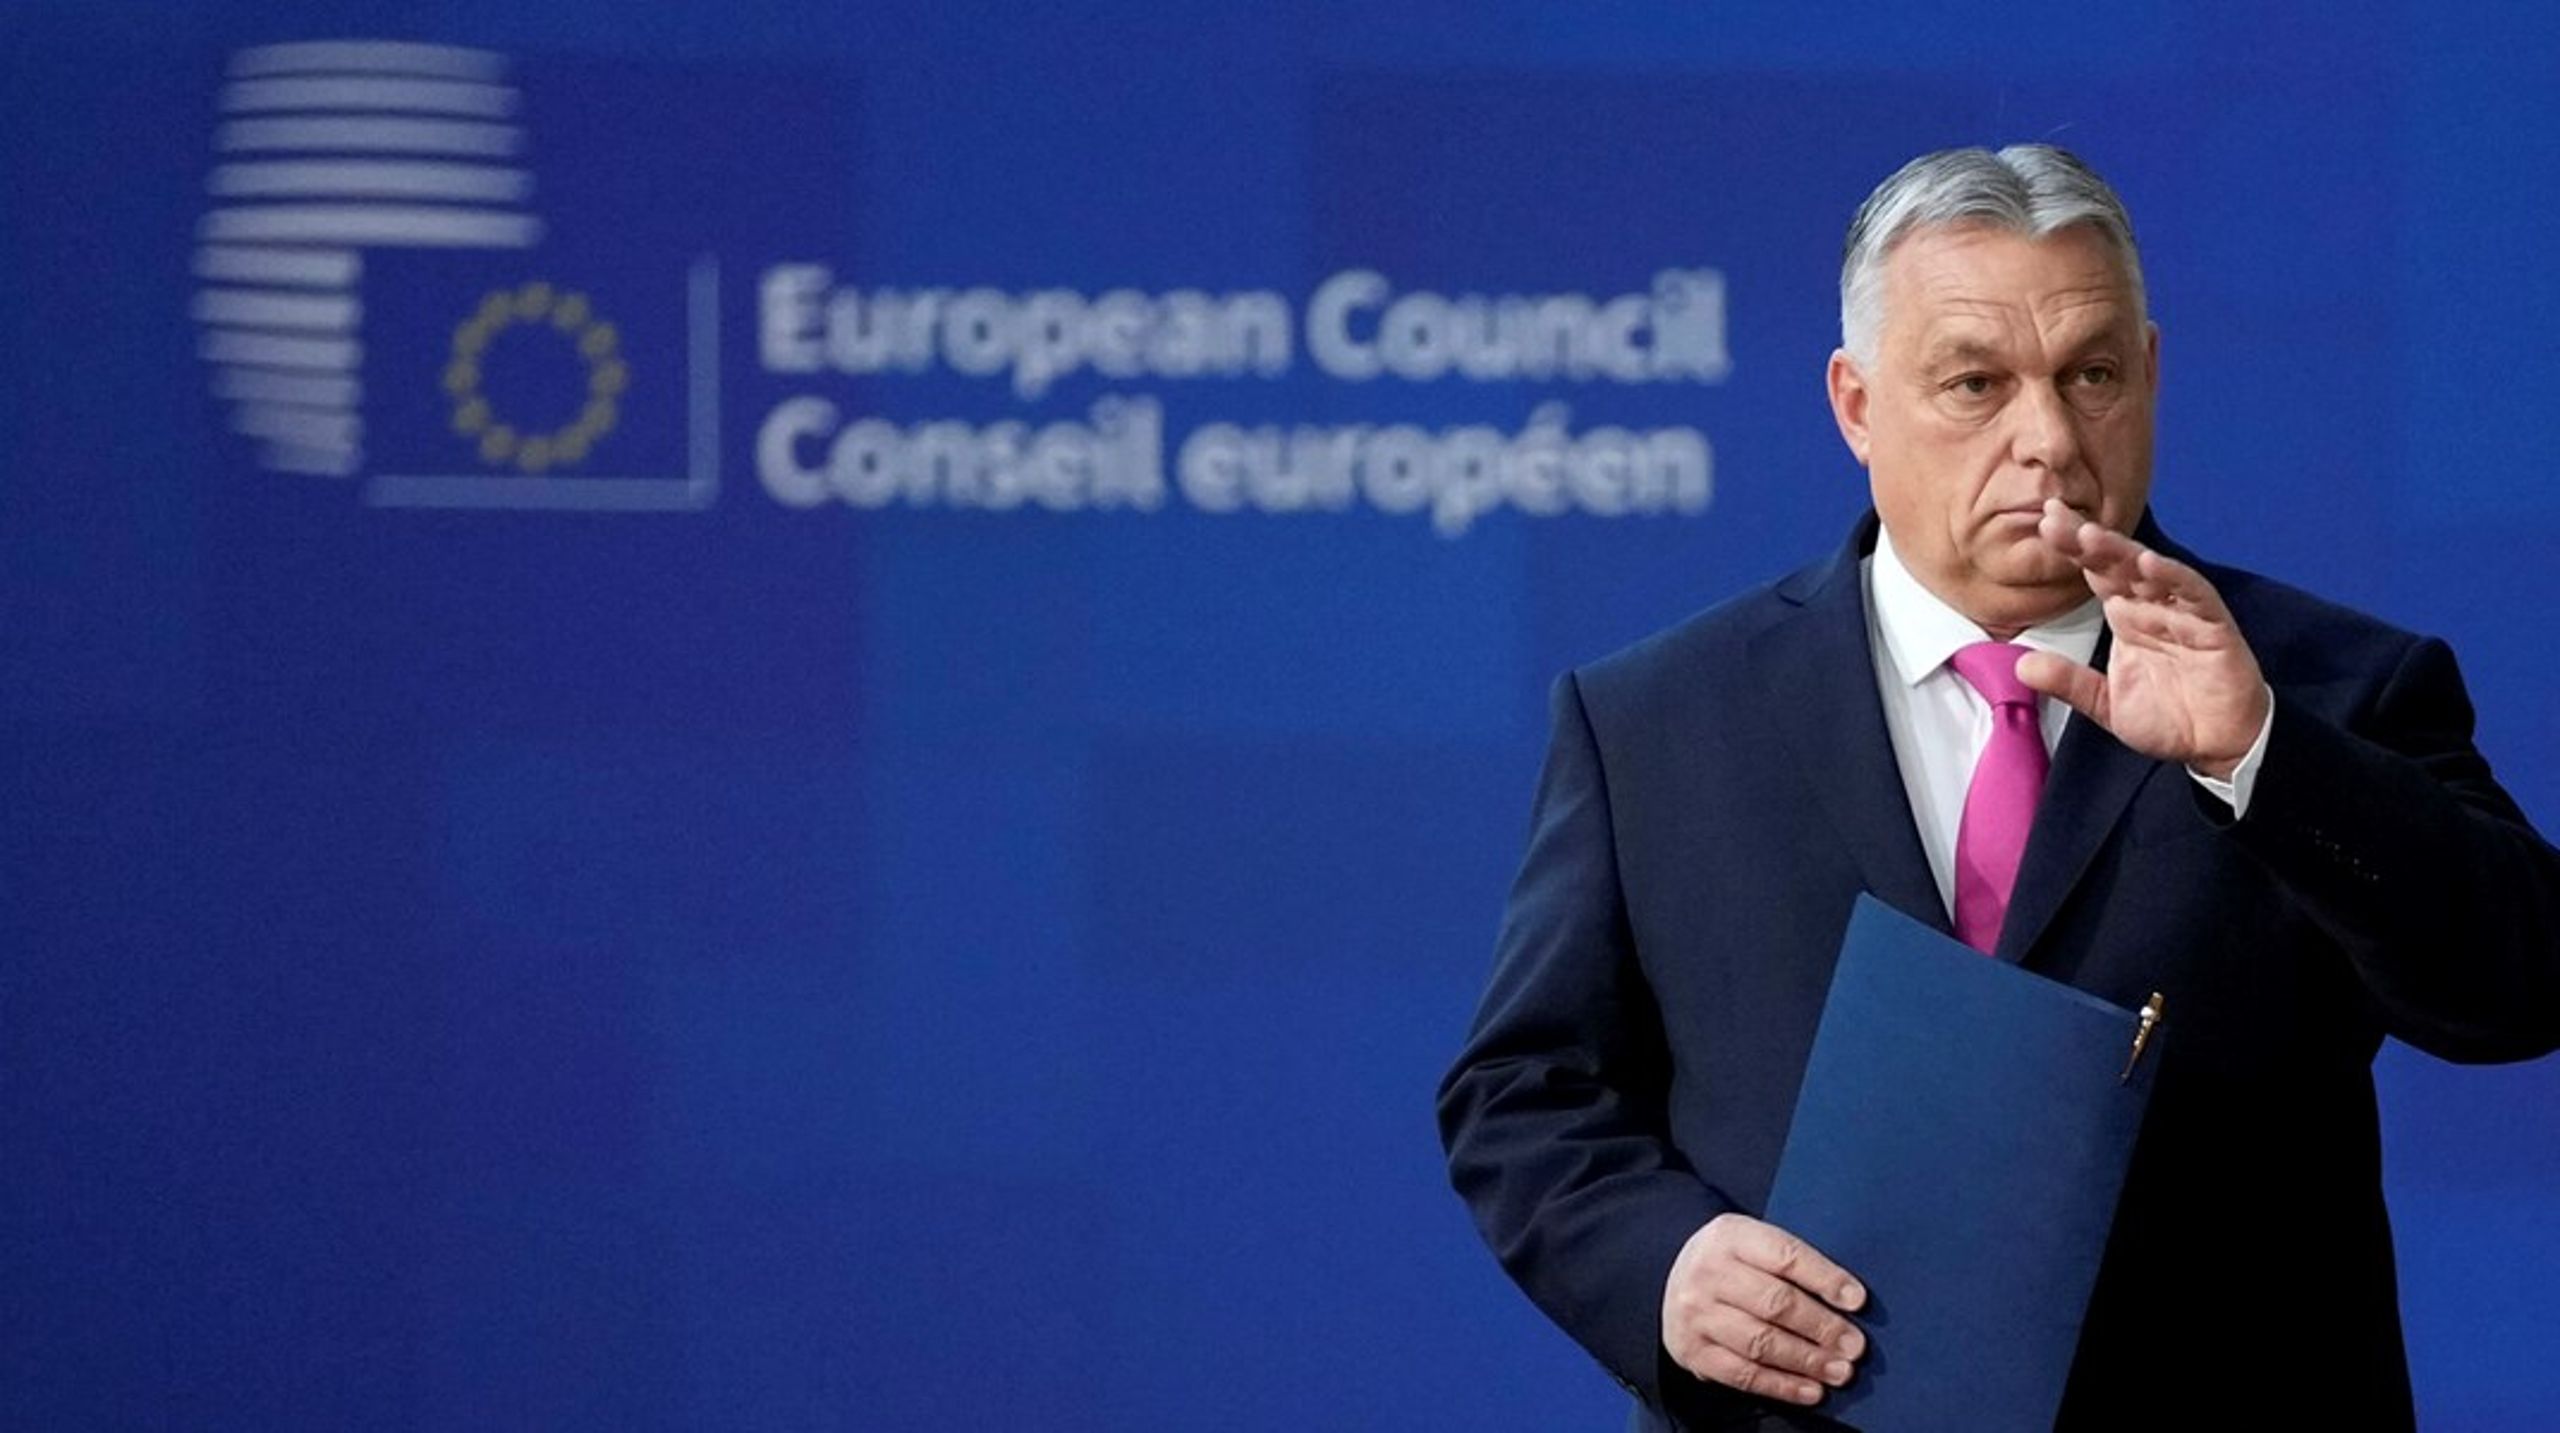 Det er fuldstændig åbenlyst, at Orbán bør fratages alle muligheder for at lede EU-landene, skriver Jakob Wind.